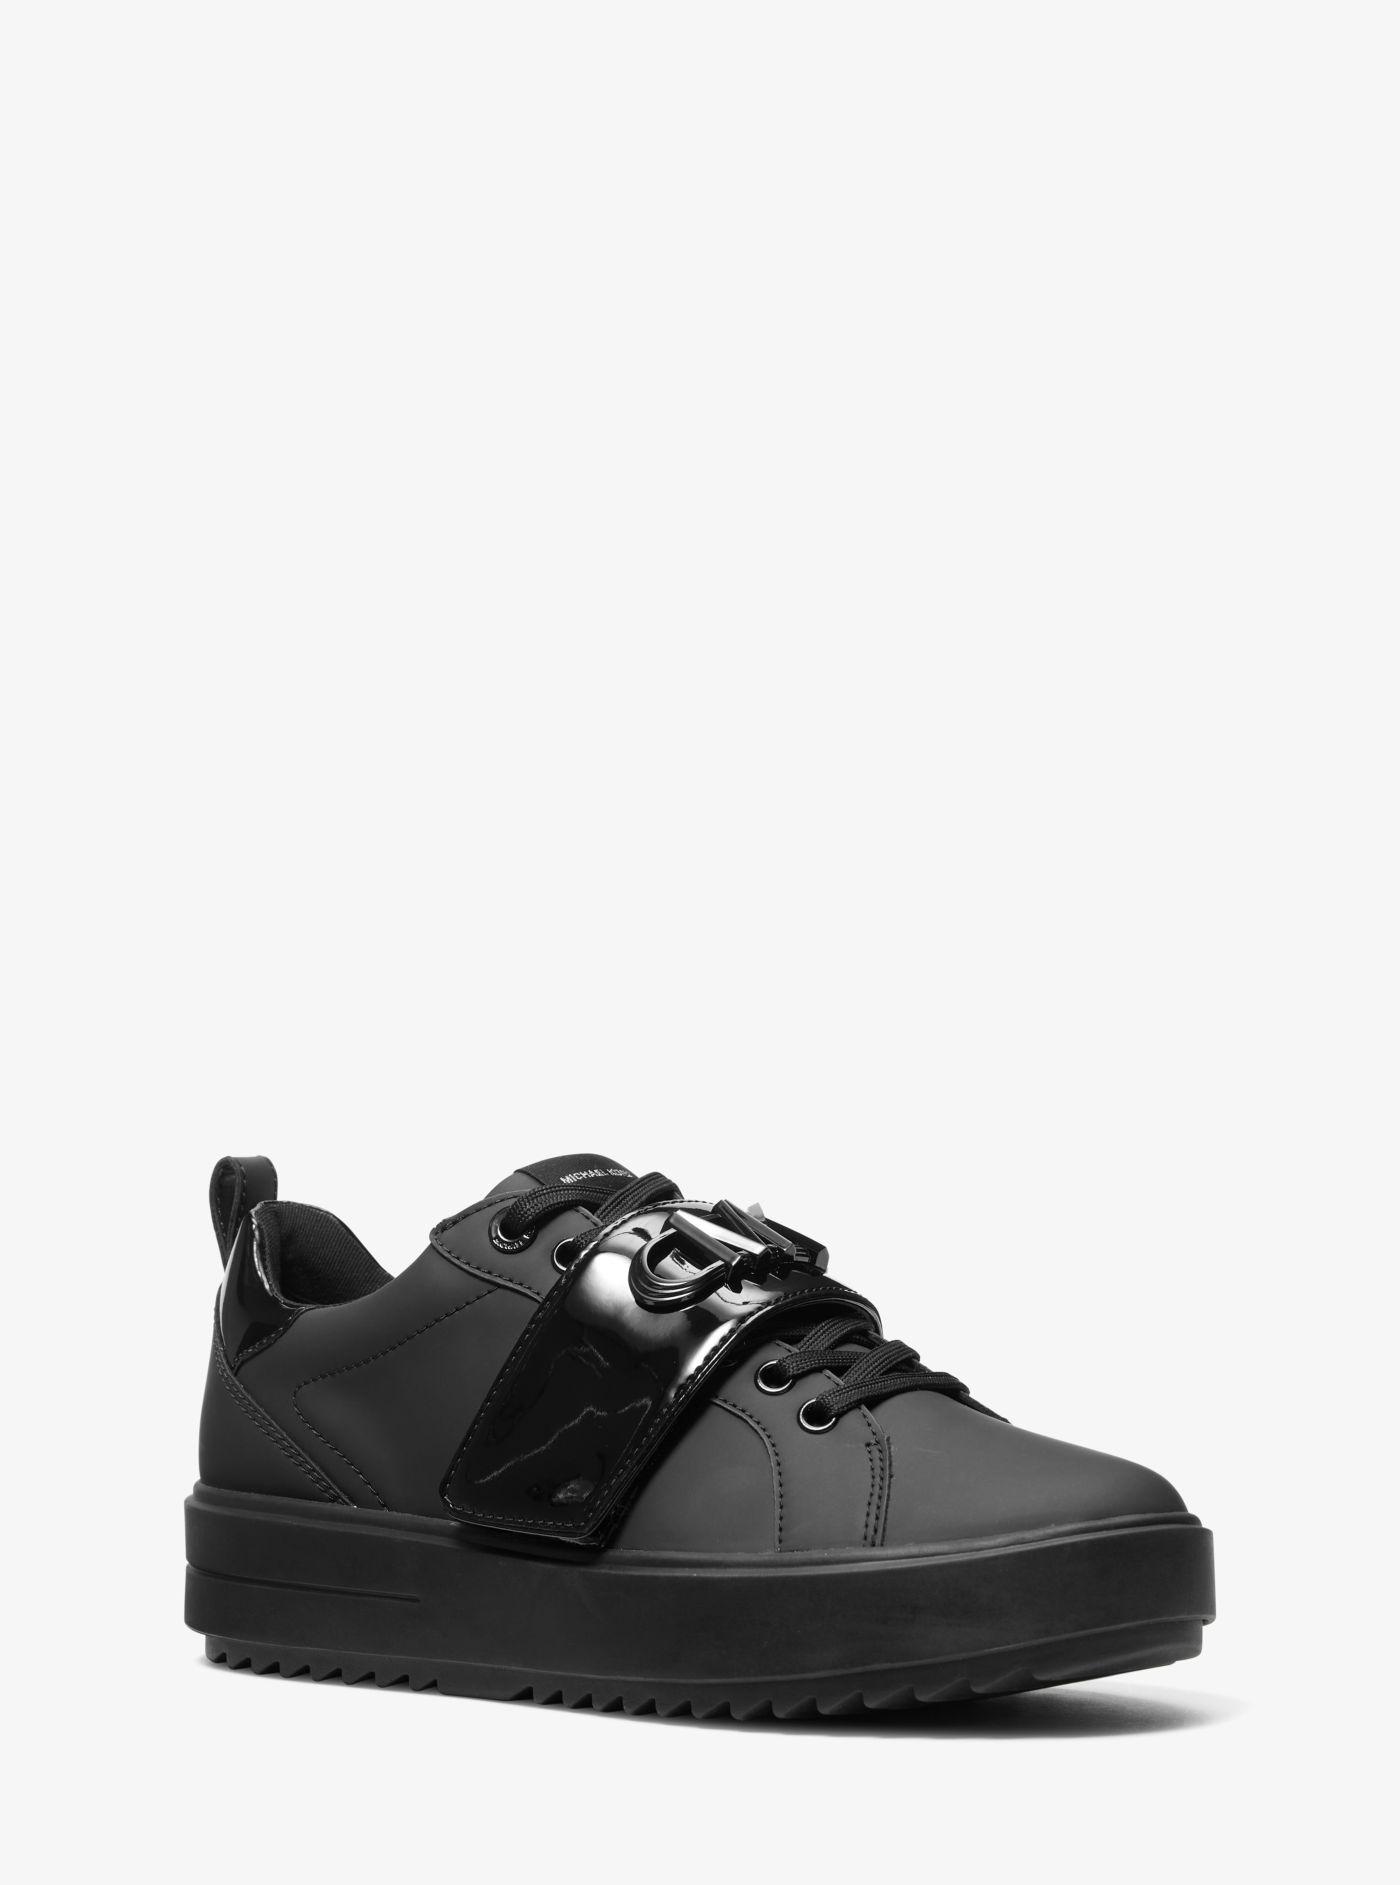 Michael Kors Emmett Logo Embellished Faux Leather Sneaker in Black ...